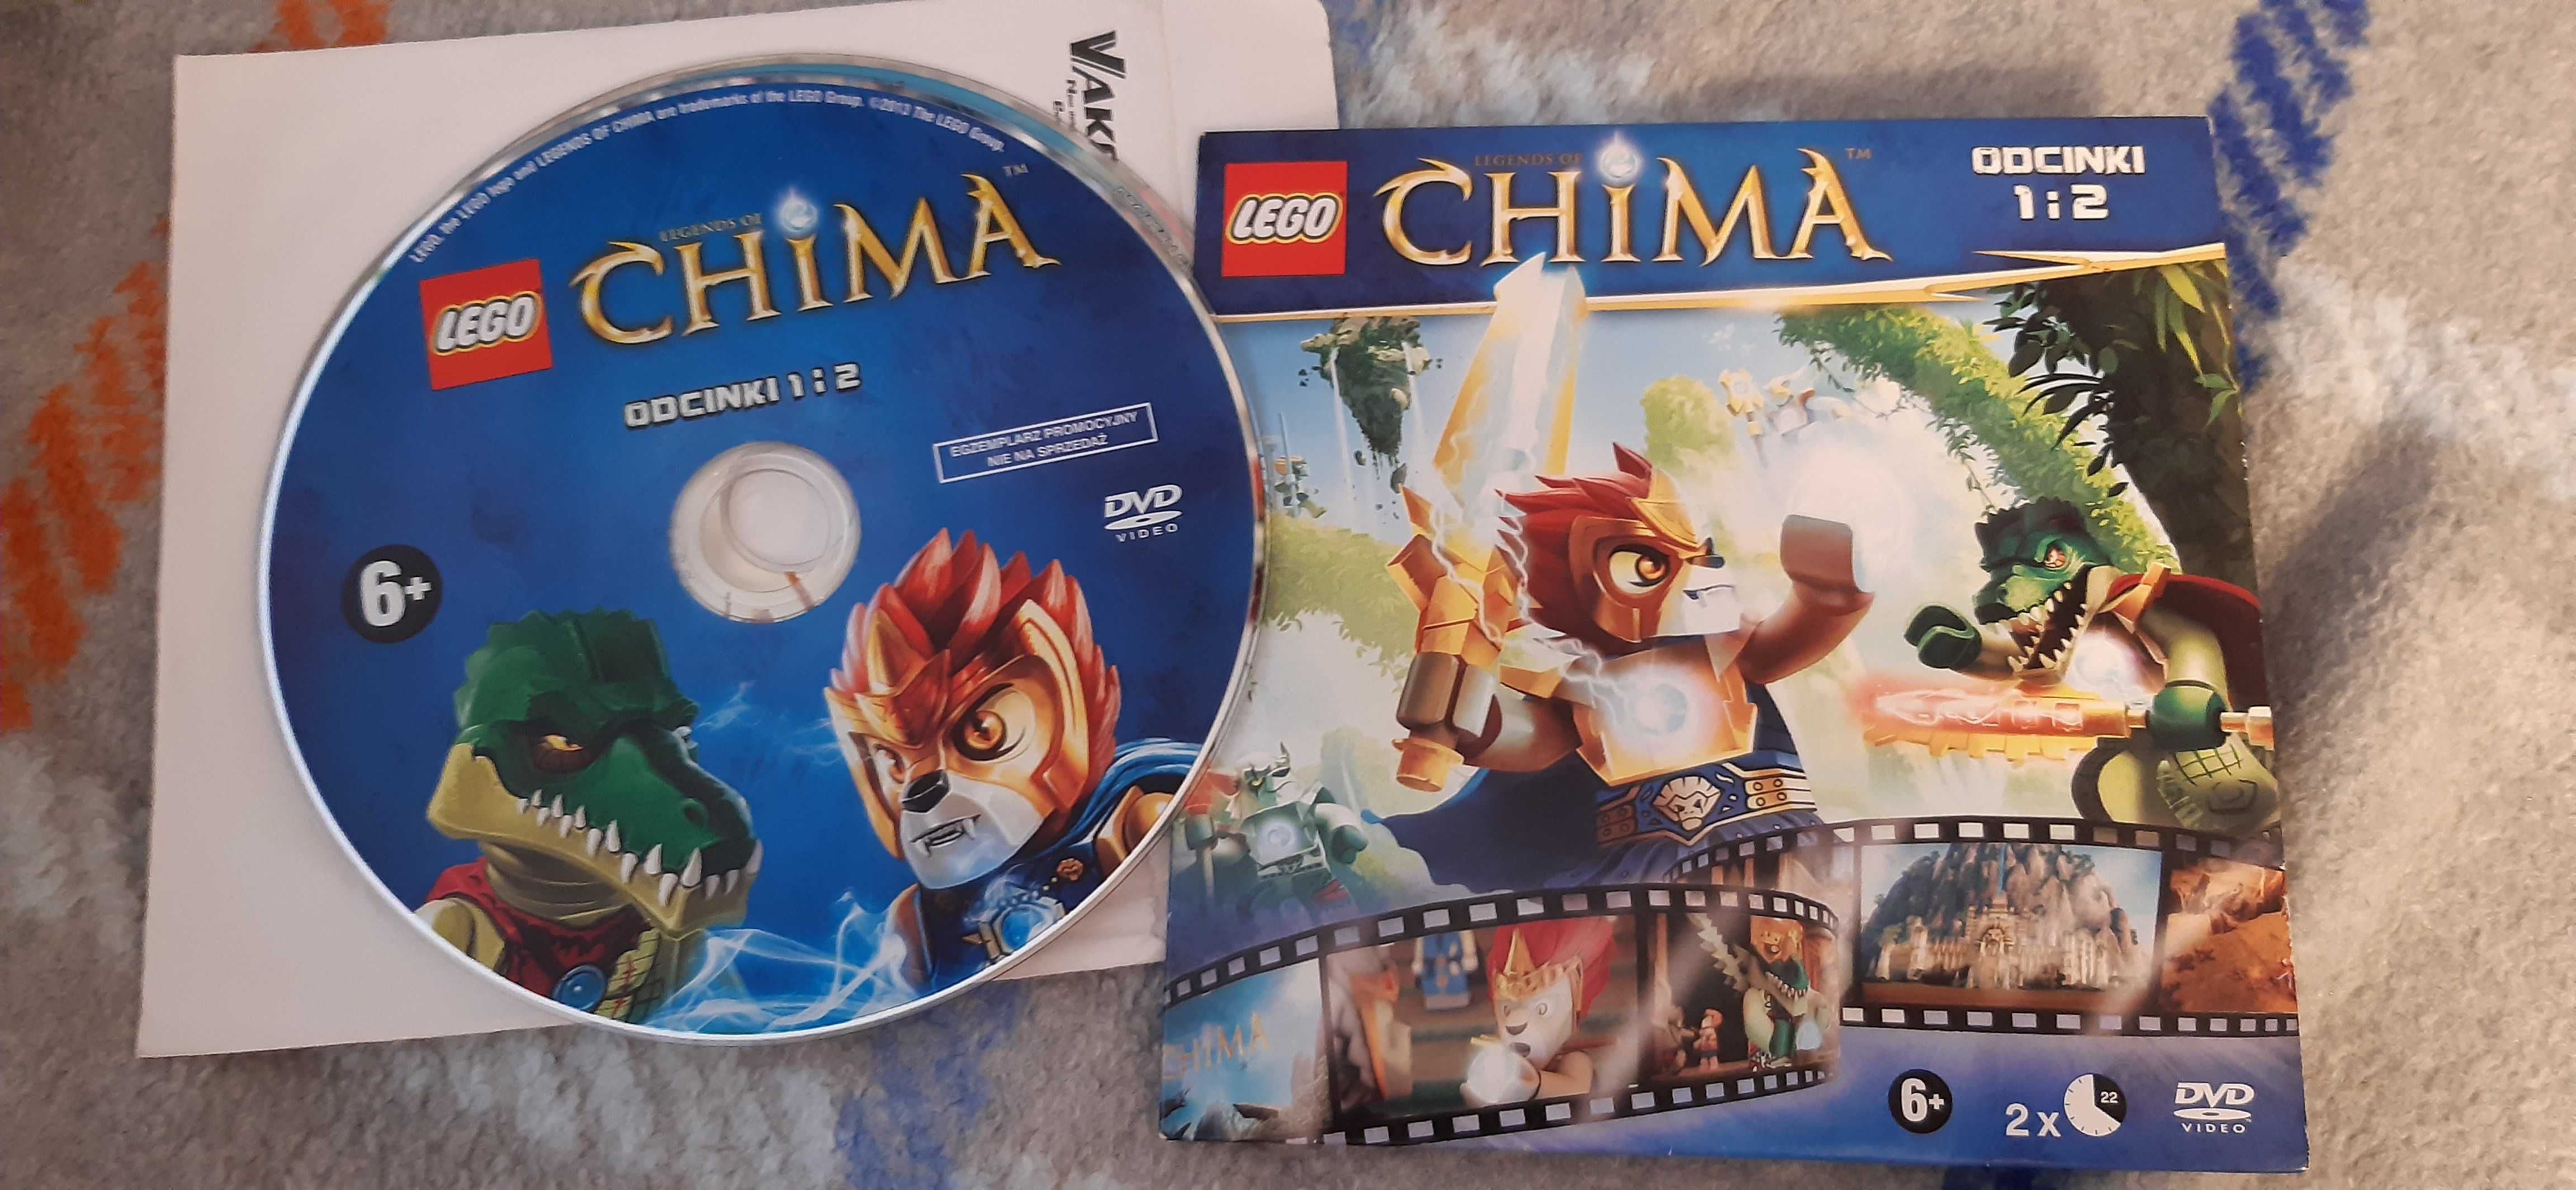 2 bajki dvd lego dla dzieci chima i bionicle